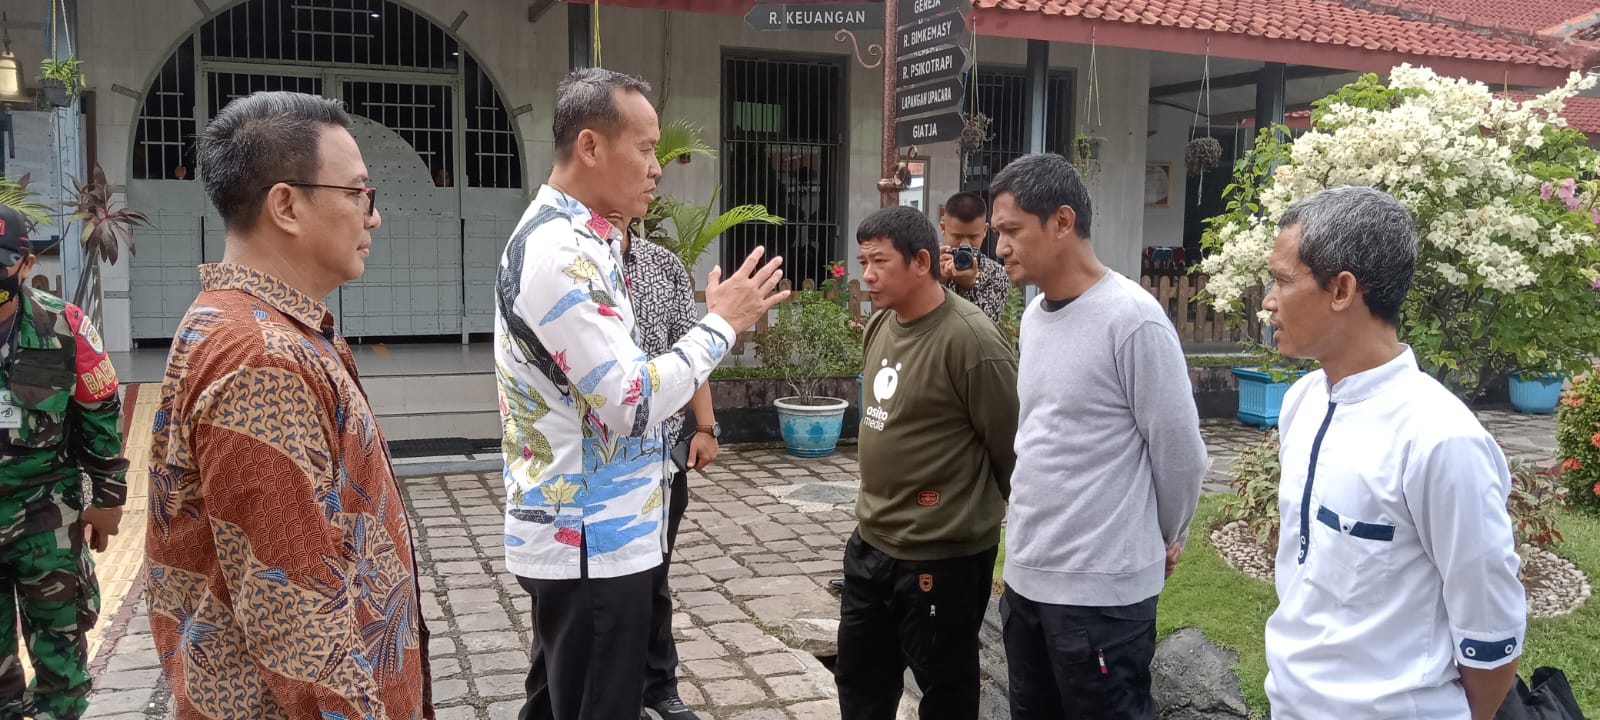 Tiga Napiter Bebas Bersyarat dari Lapas Kelas I Cirebon: Sudah Ikhlas Menjadi Warga NKRI